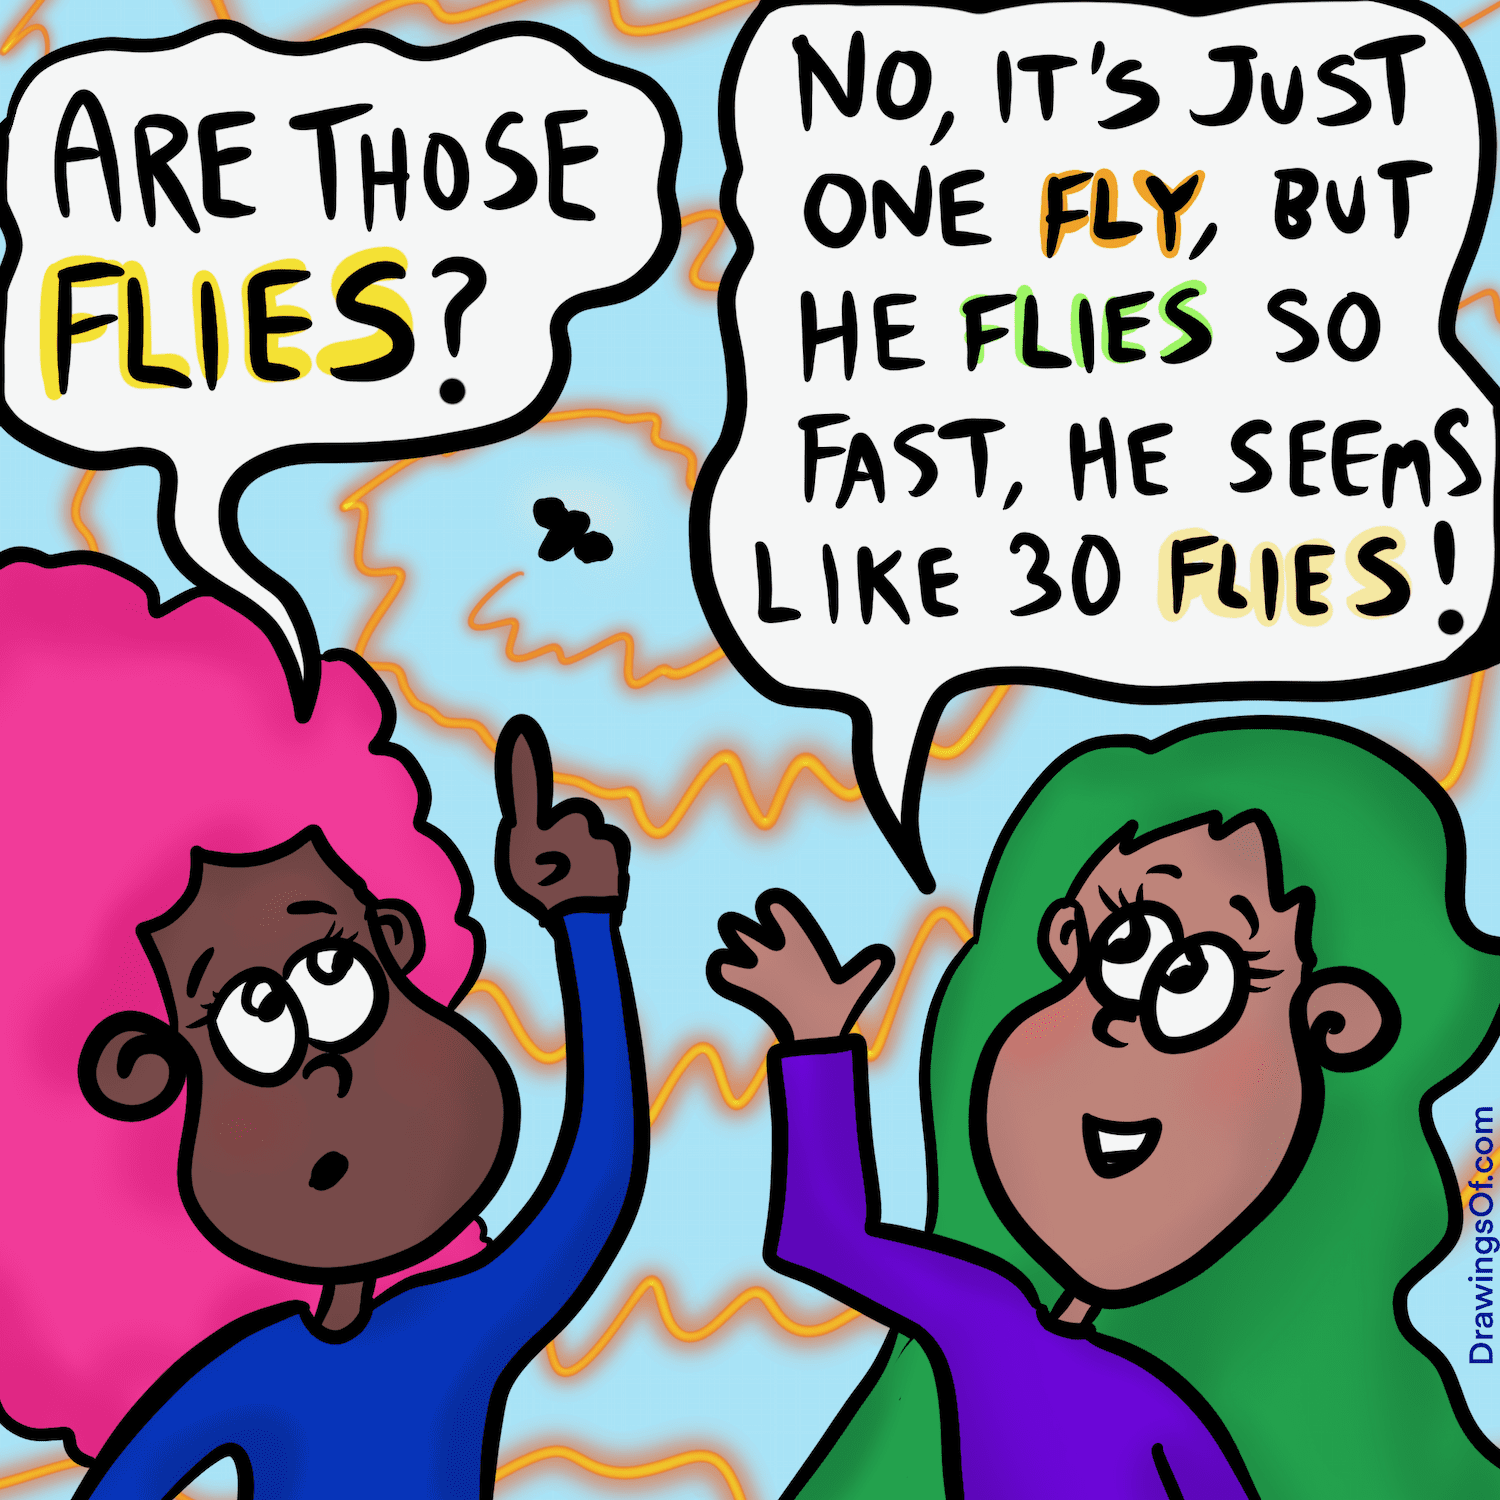 Flies or flys